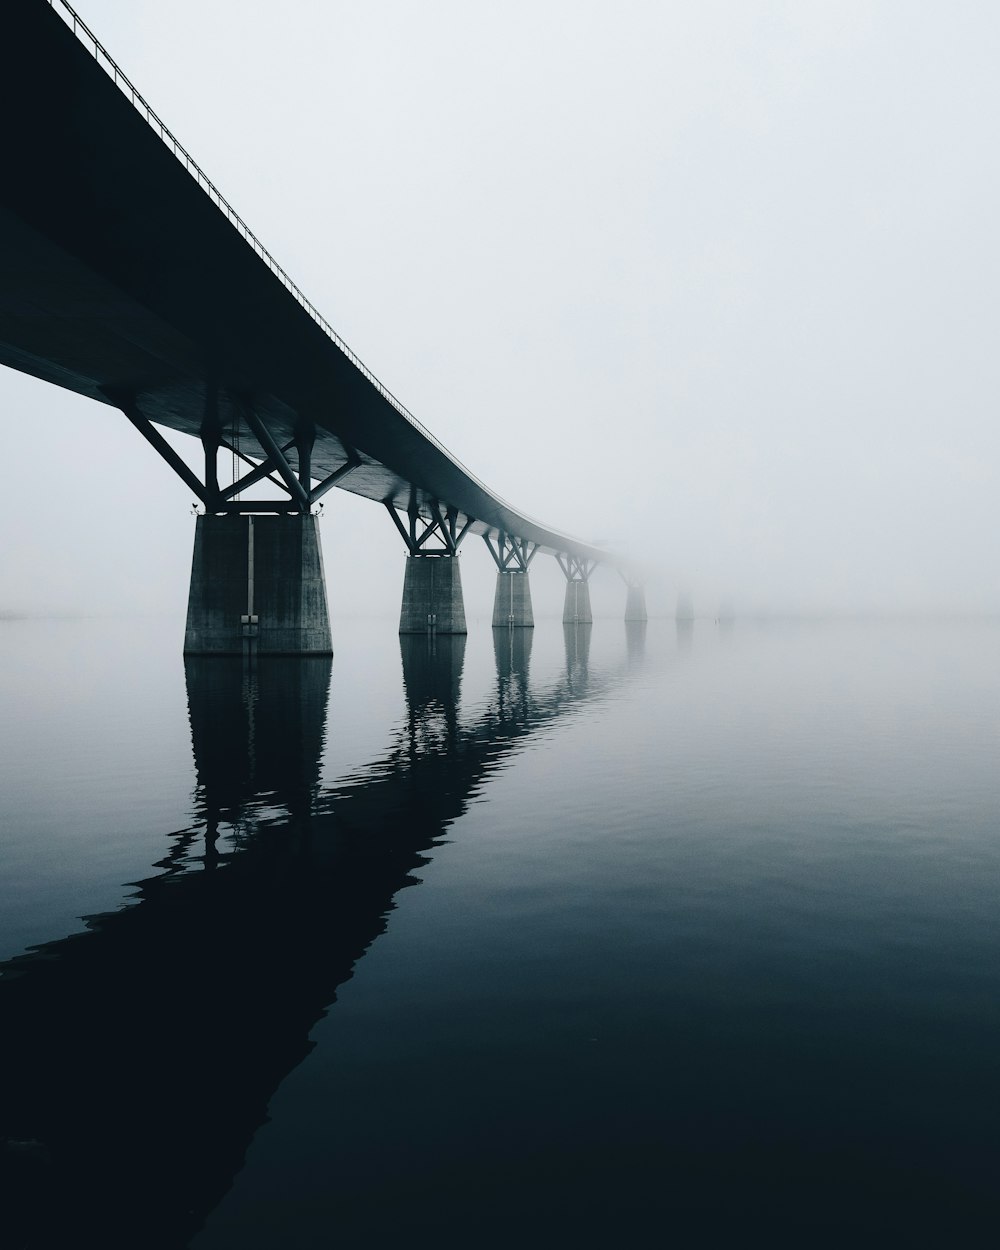 bridge over body of water